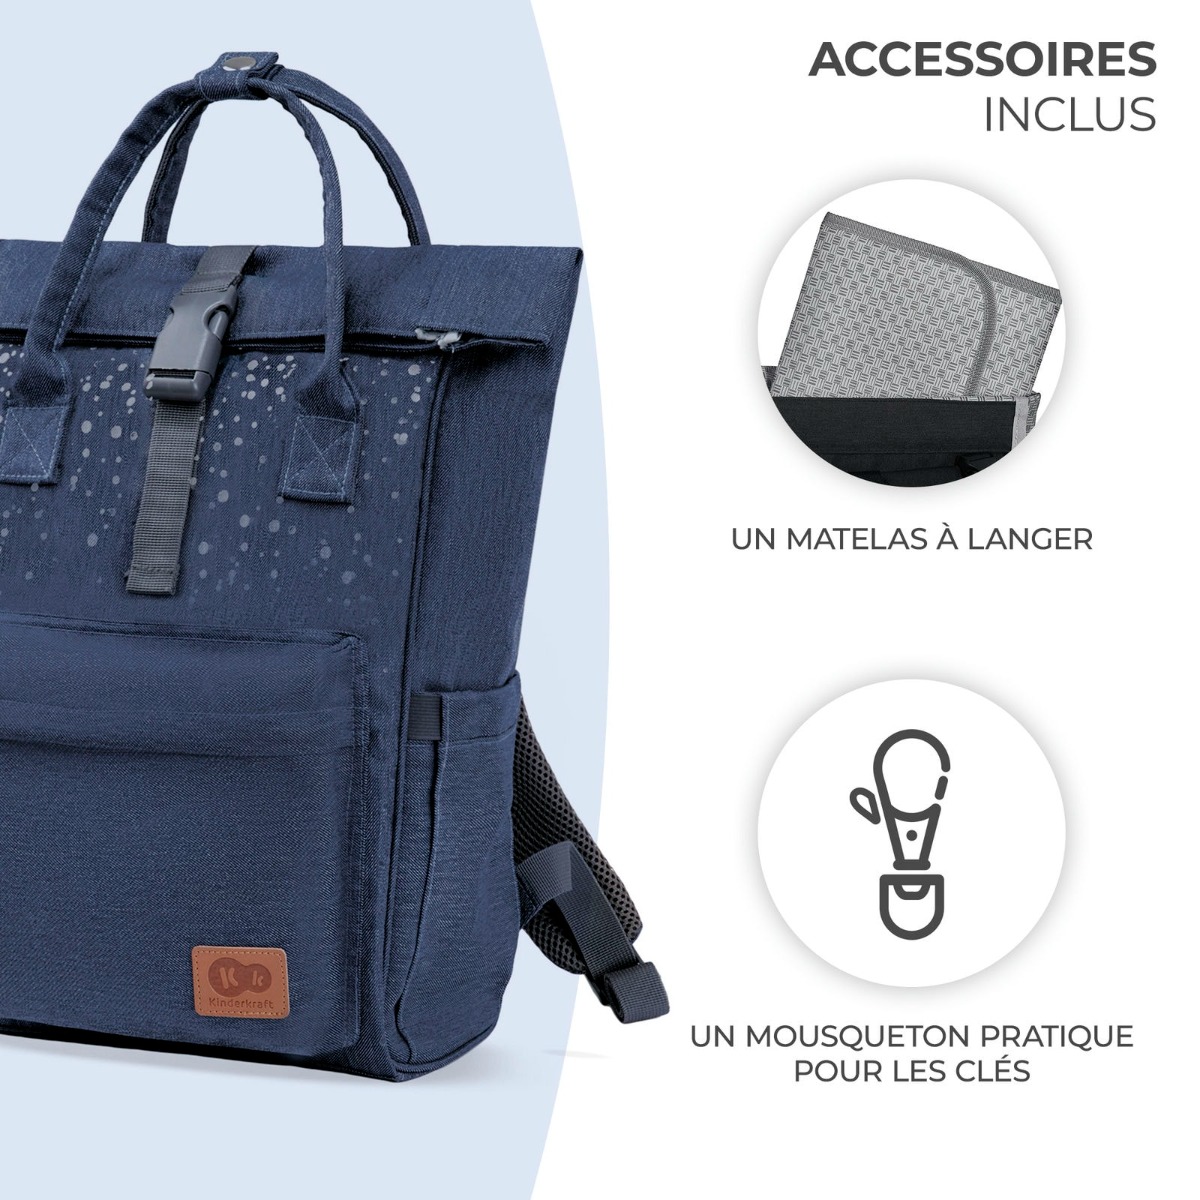 7FR-KK-moonpack-bleu-accessories-inlcus